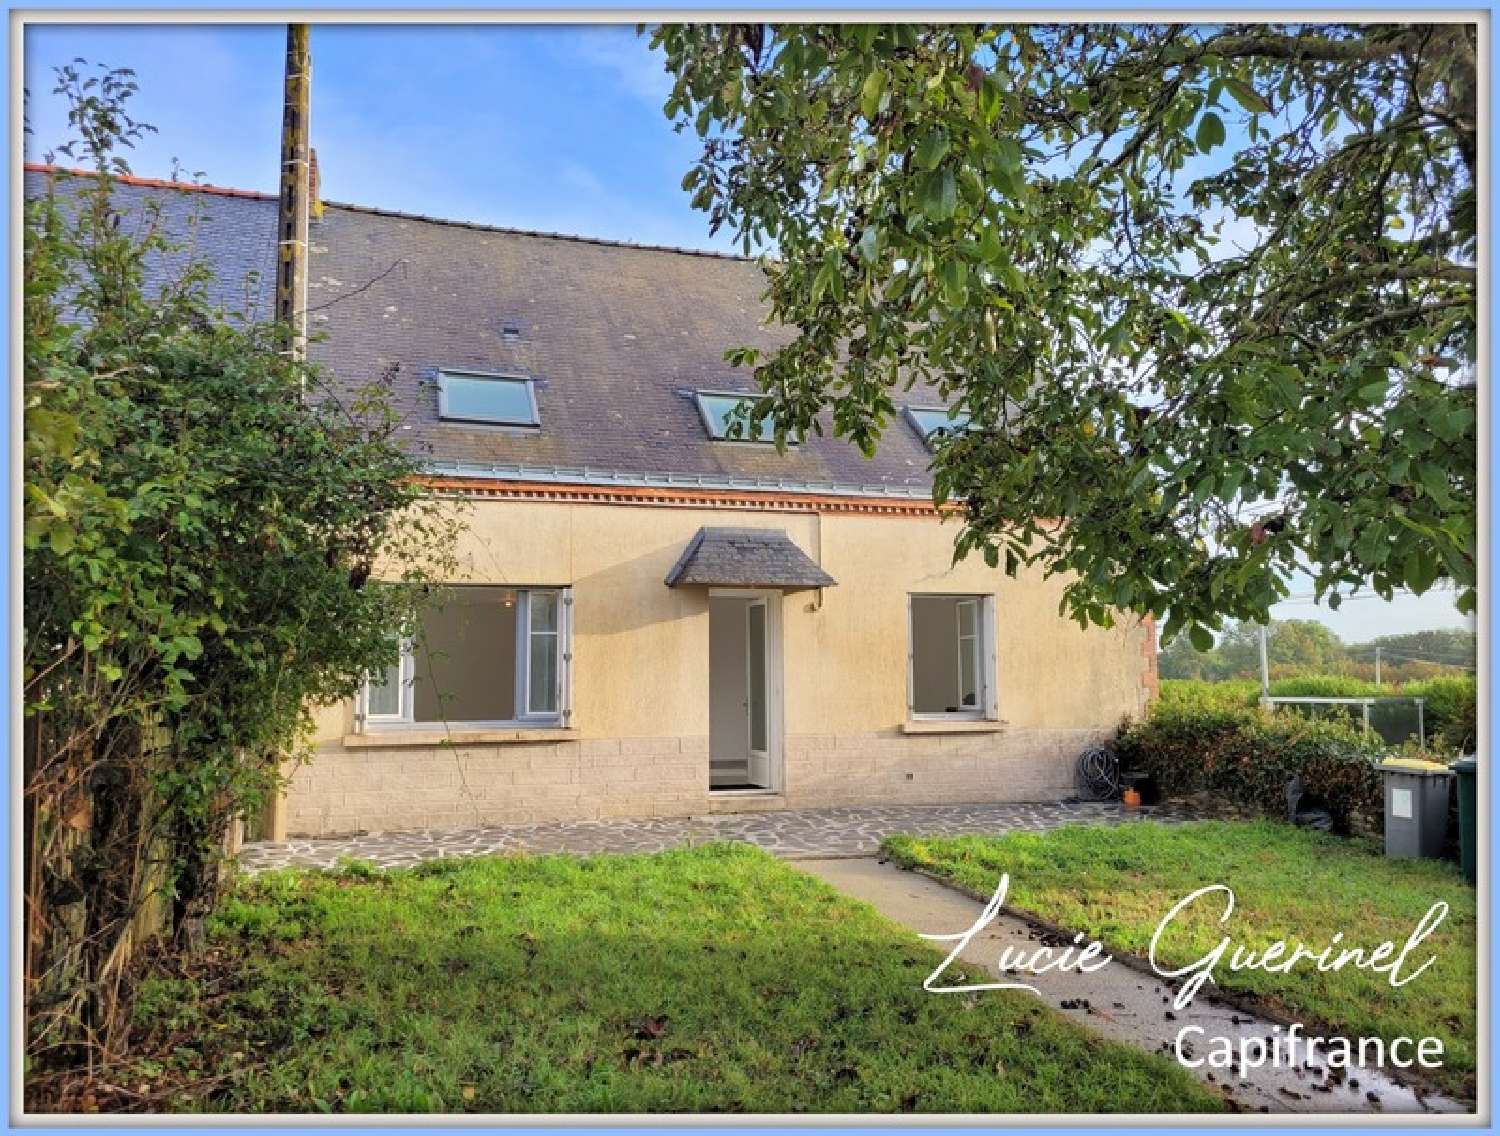  à vendre maison Erbray Loire-Atlantique 1